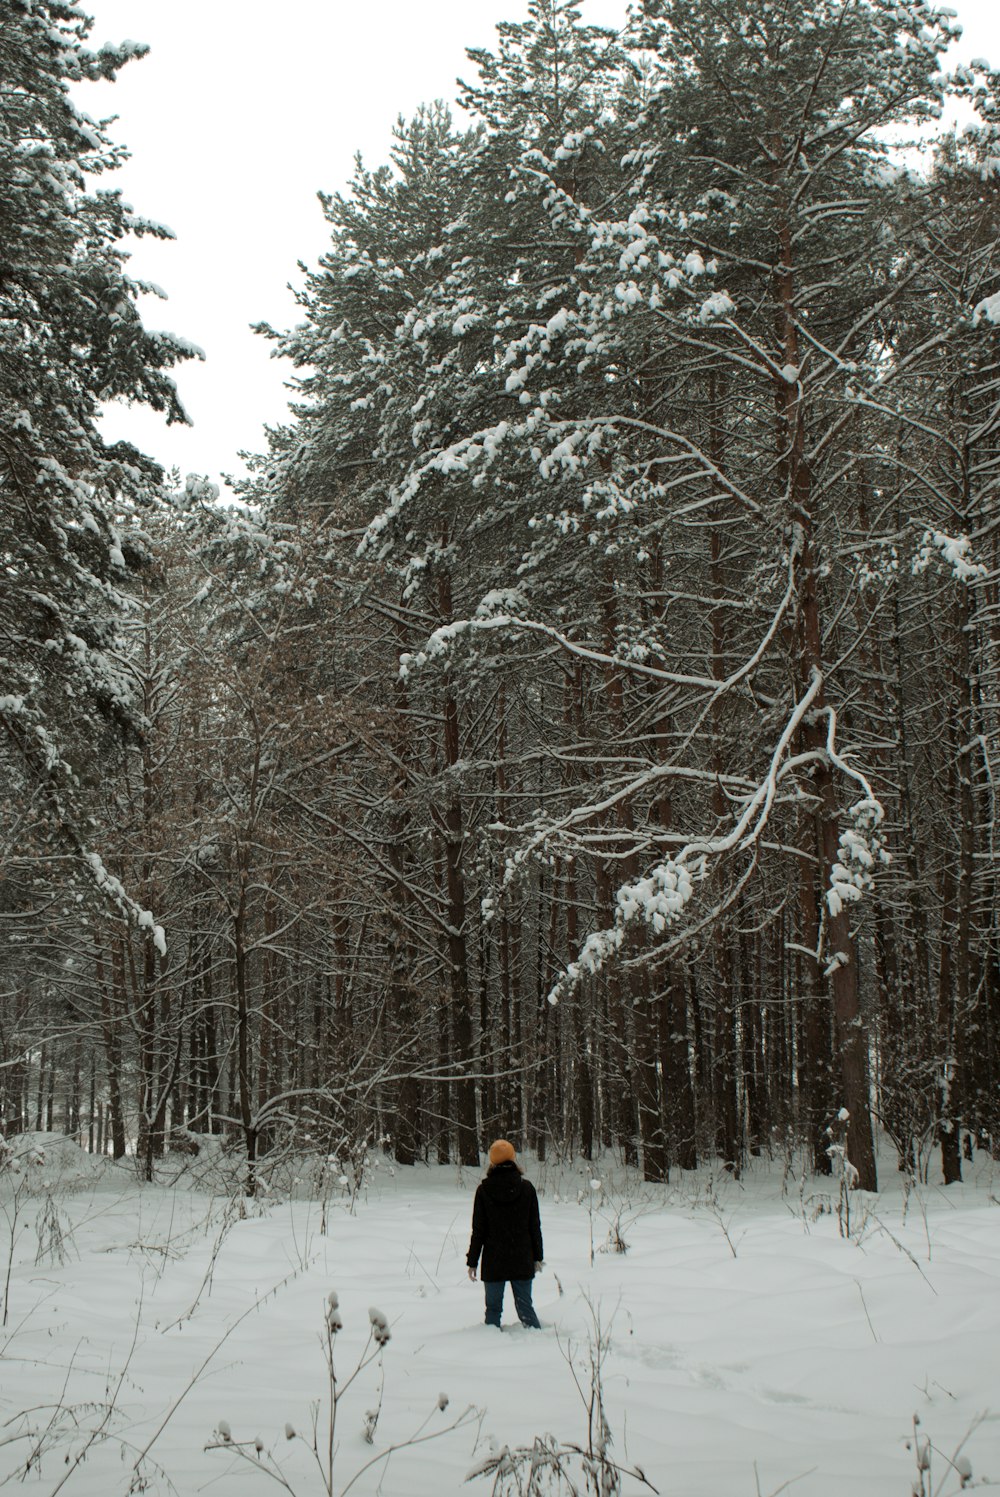 Una persona parada en medio de un bosque nevado